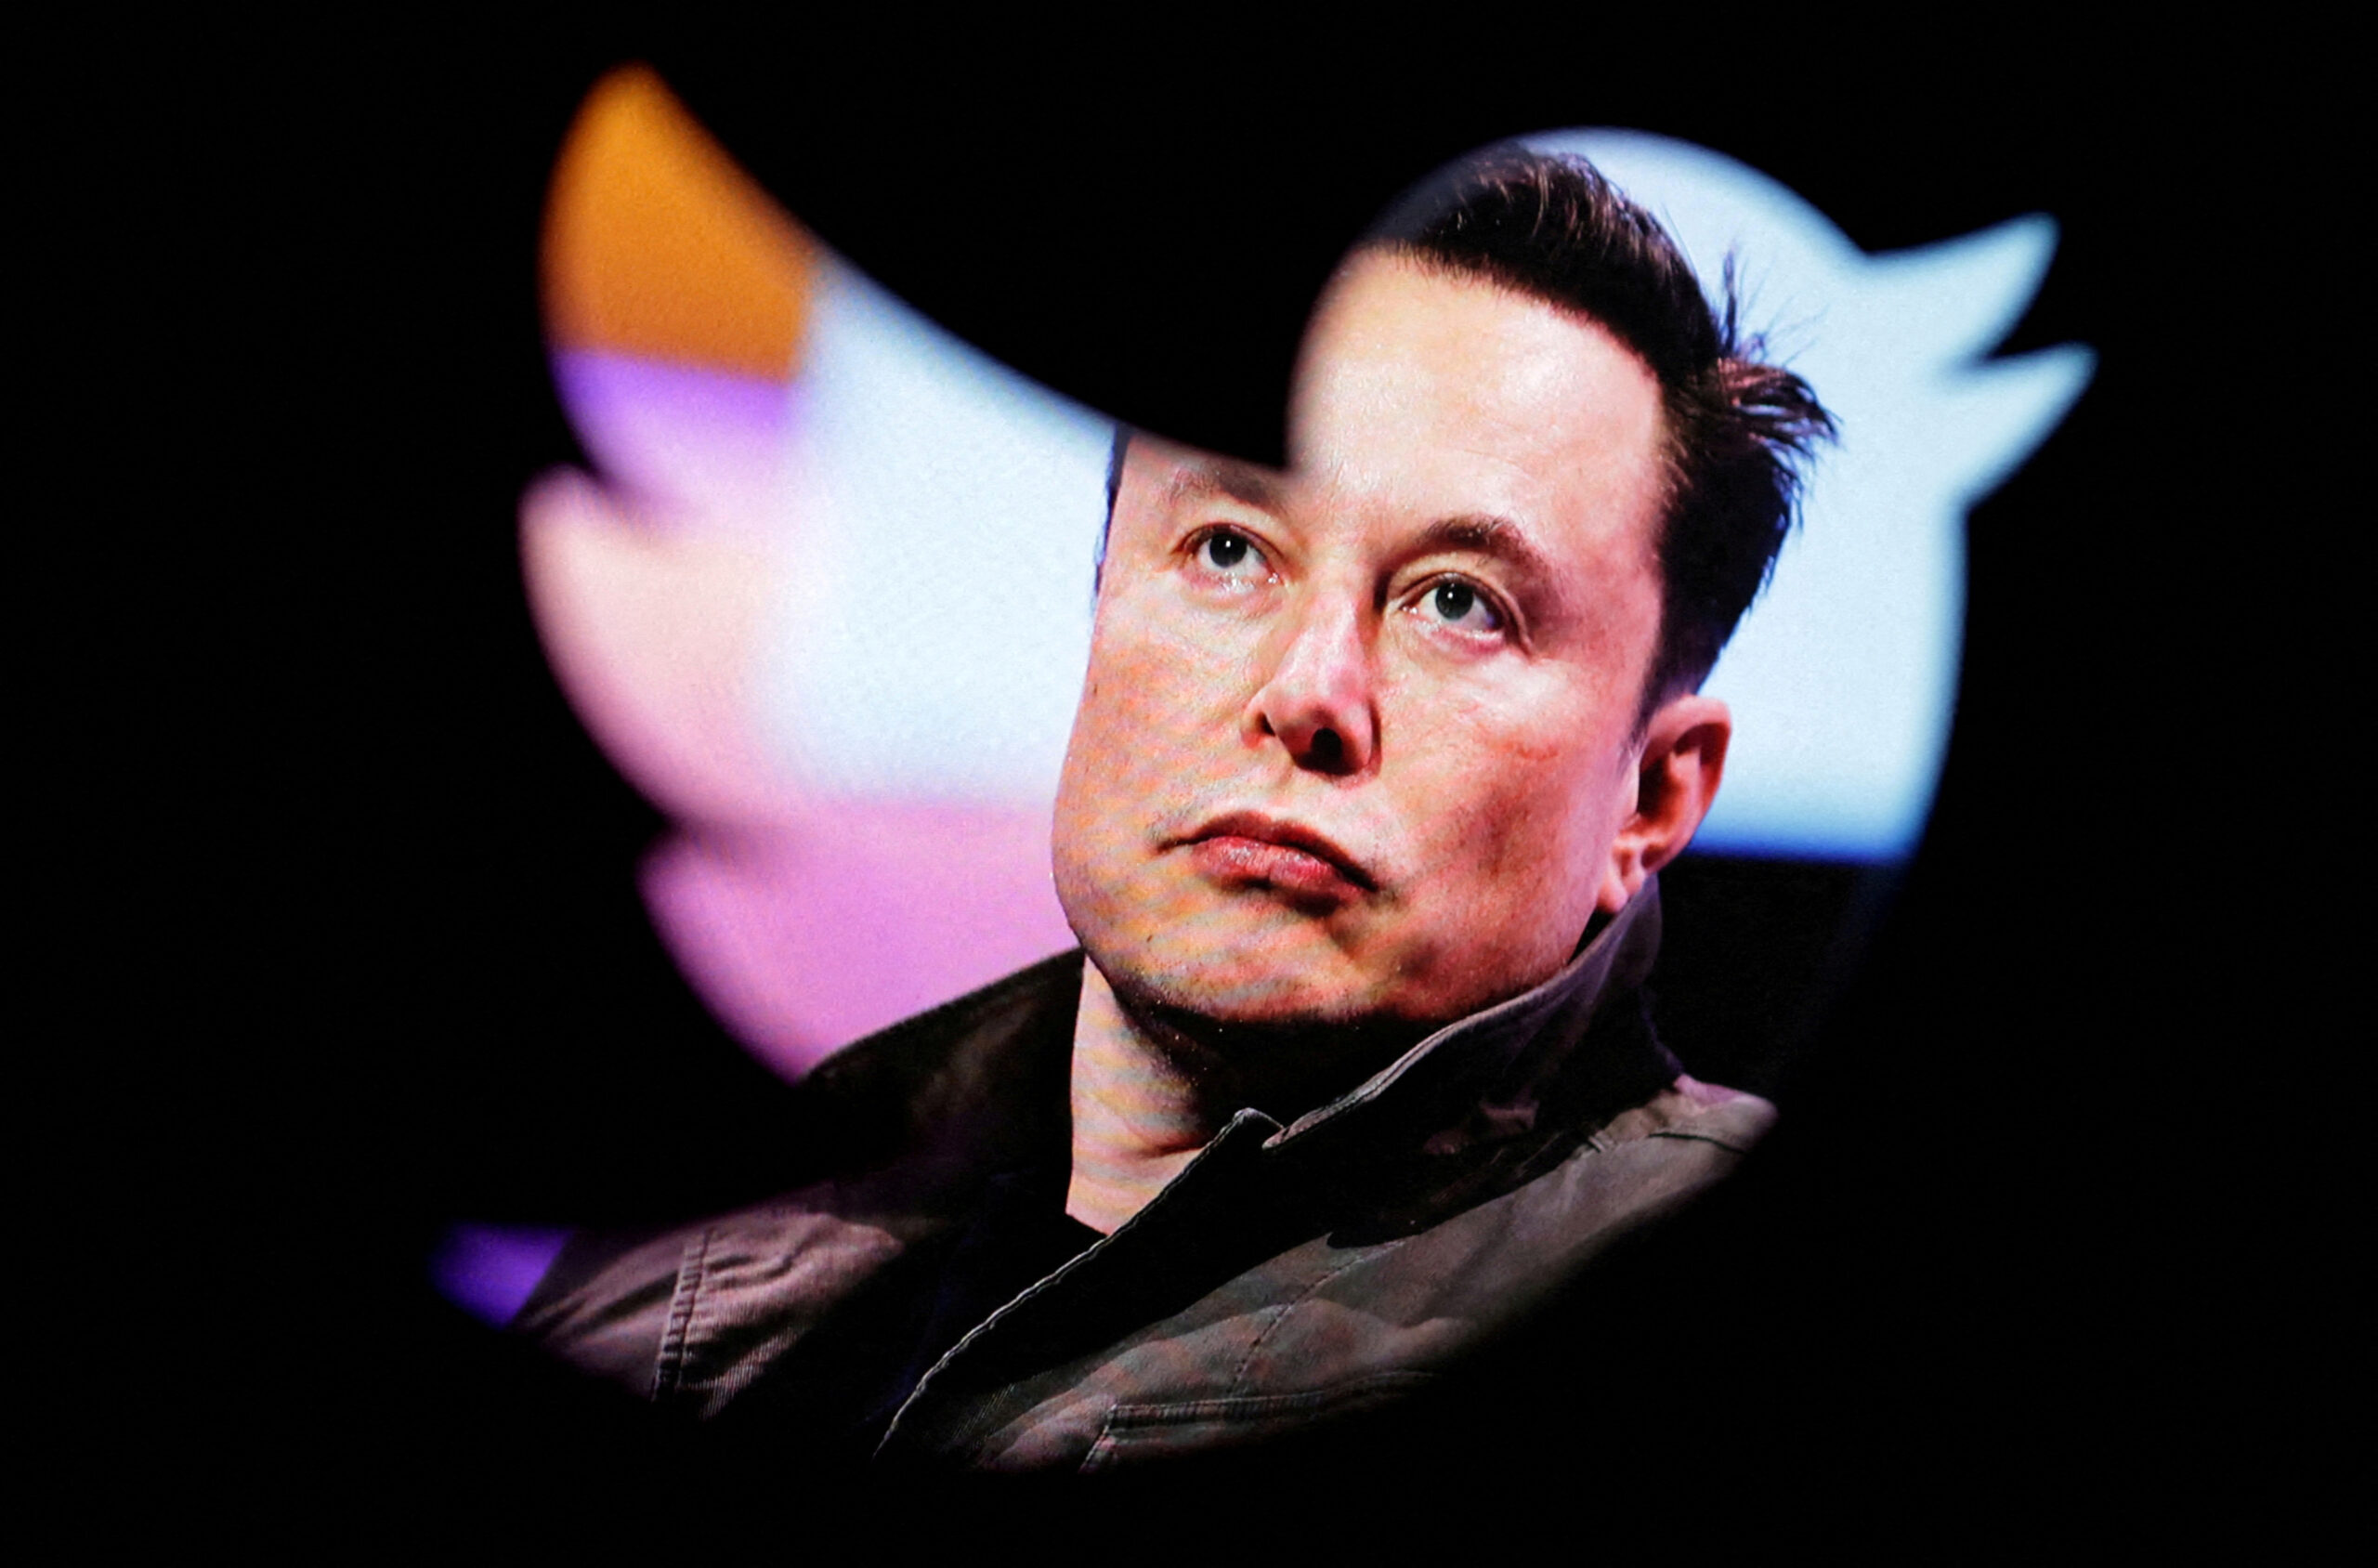 Elon Musk anunció el lunes que se convertirá en CEO de Twitter después de despedir a altos funcionarios la semana pasada.